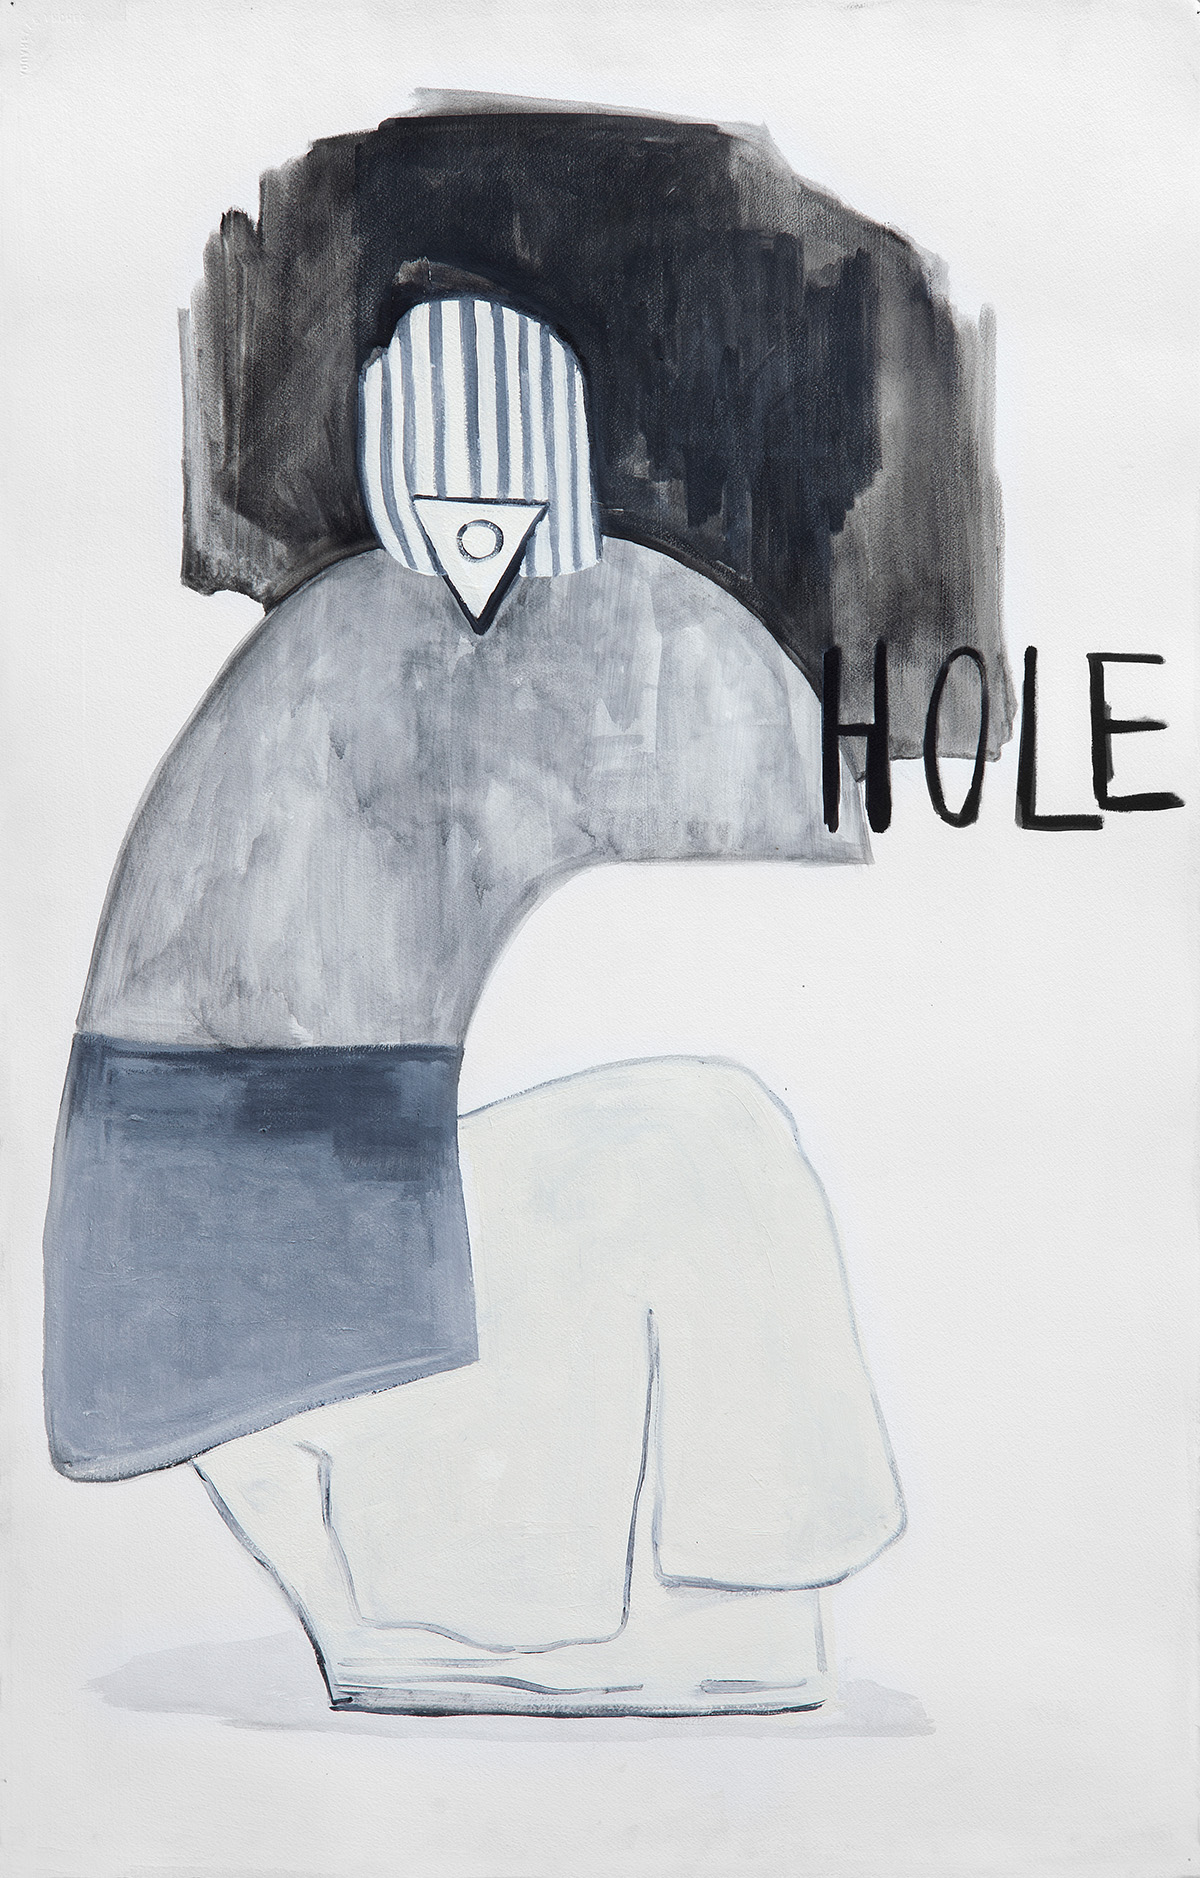 A hole